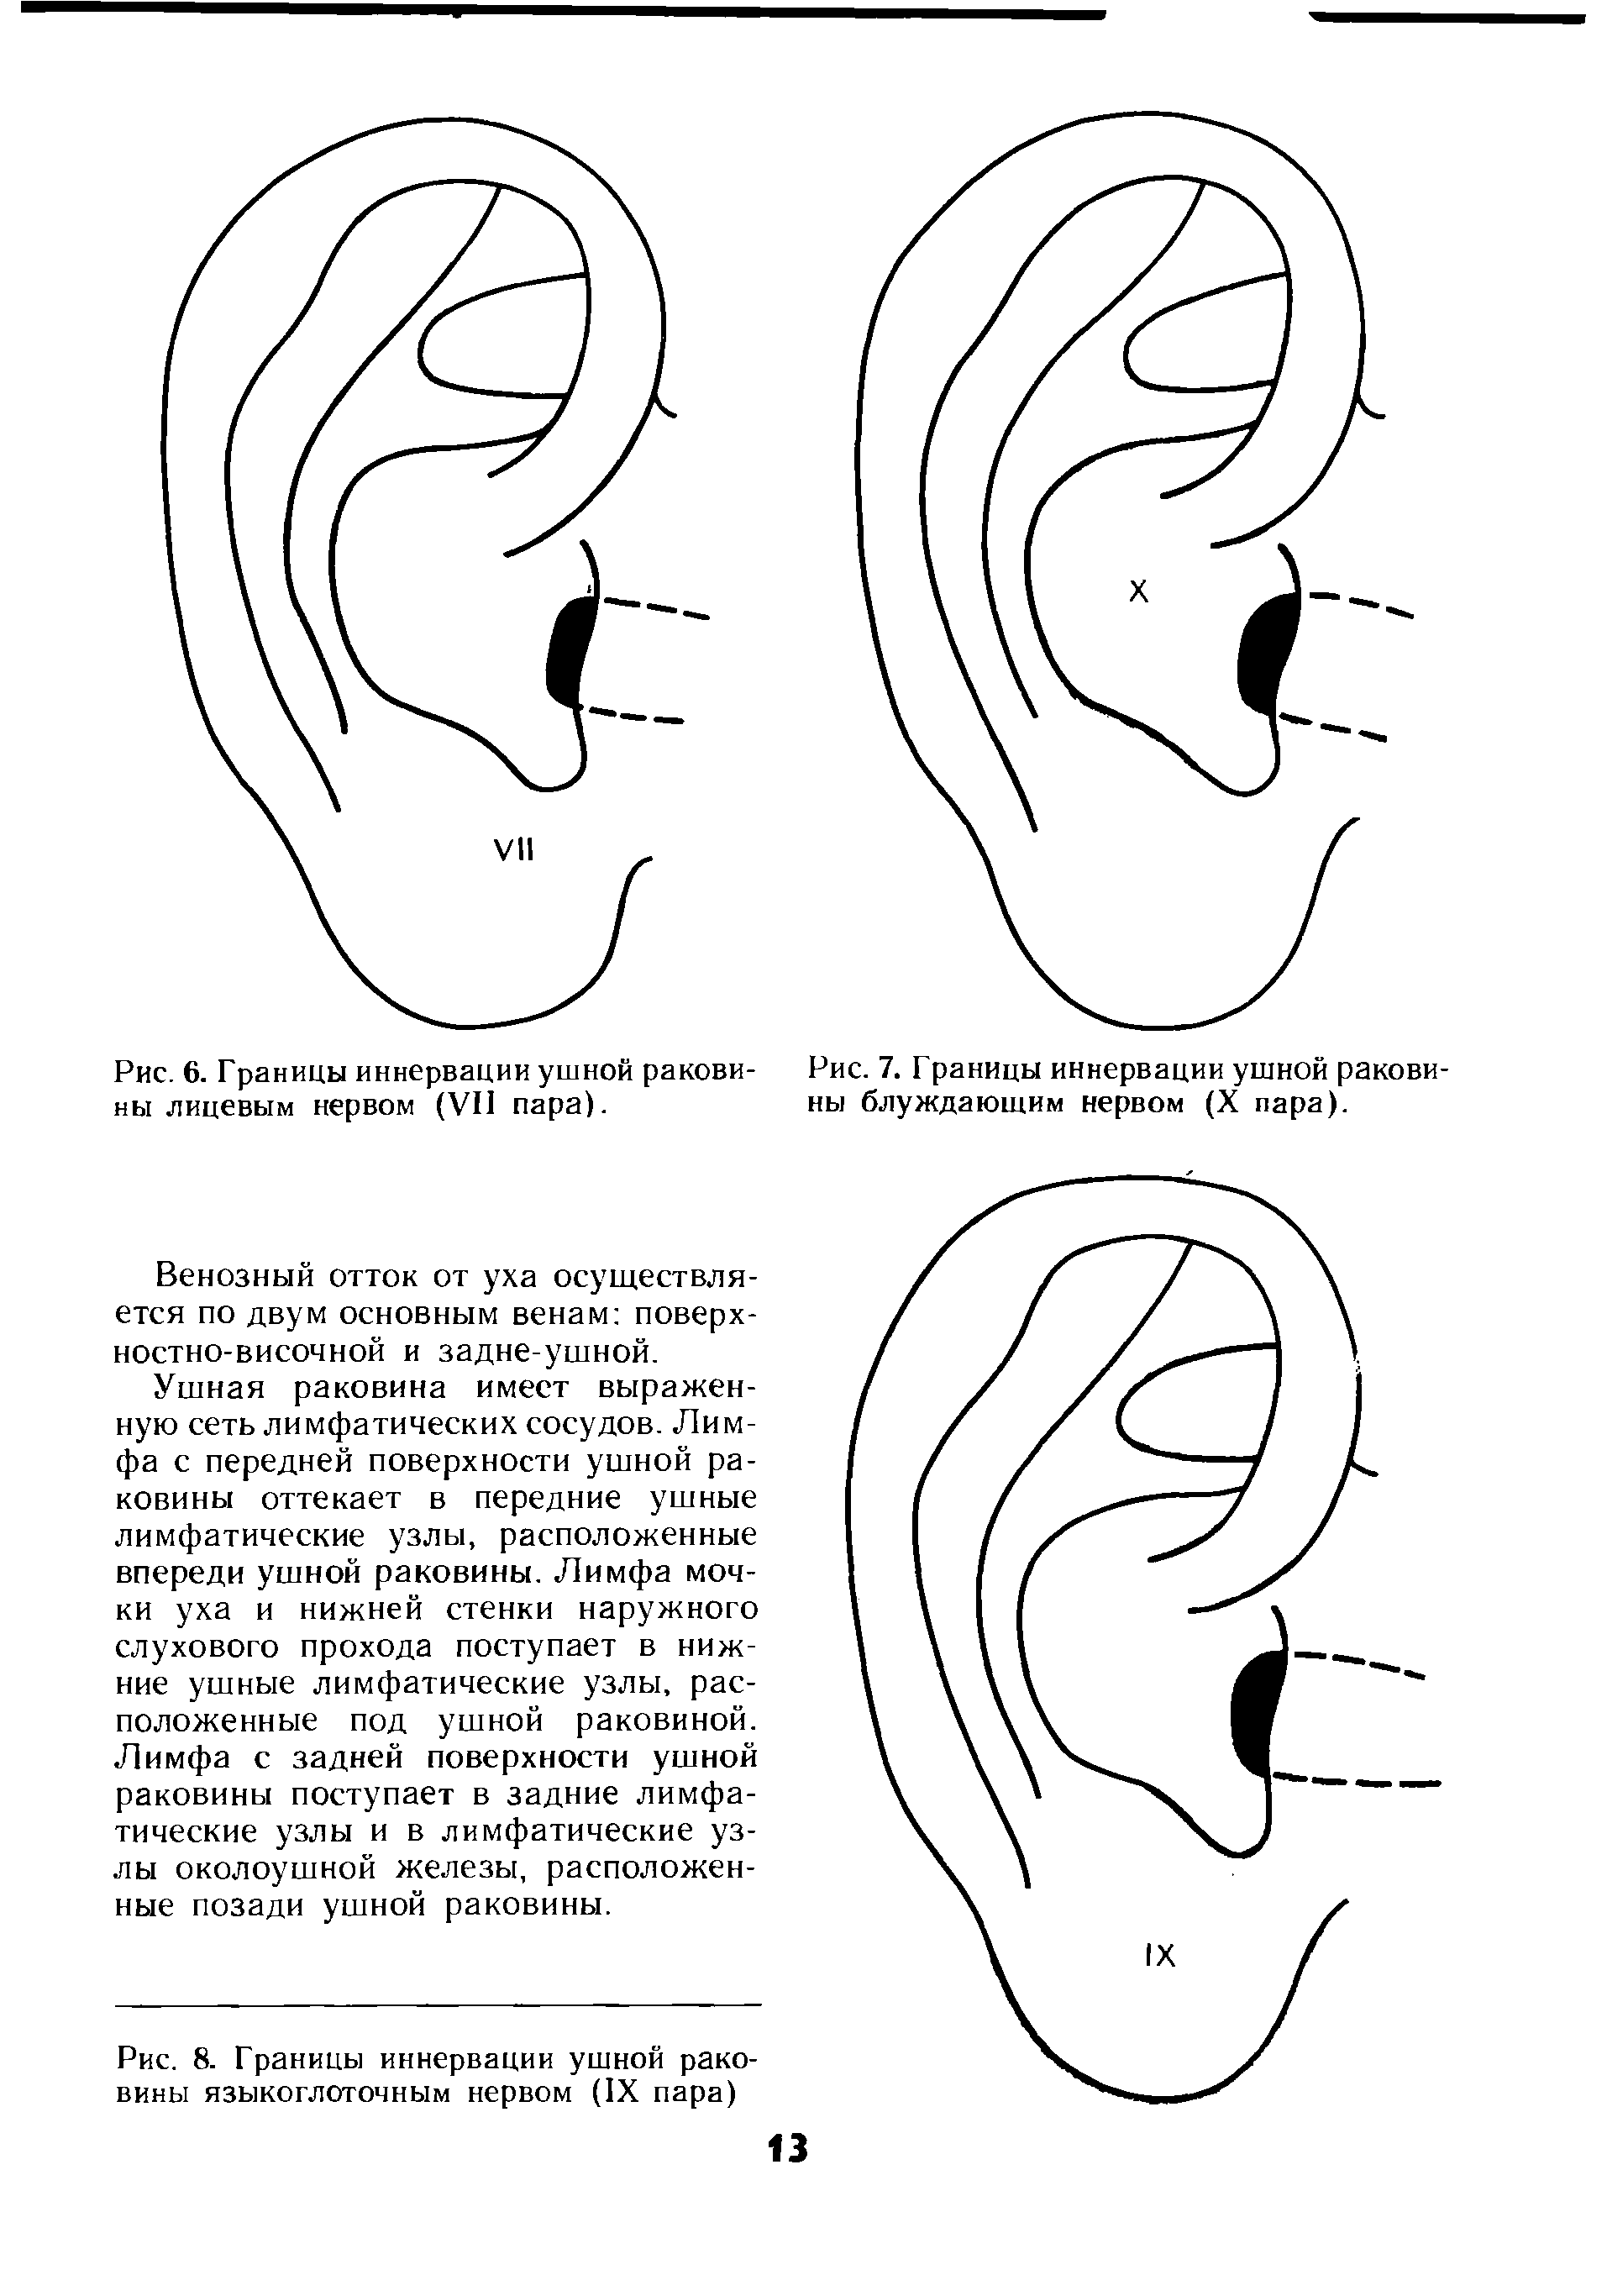 Рис. 7. Границы иннервации ушной раковины блуждающим нервом (X пара).